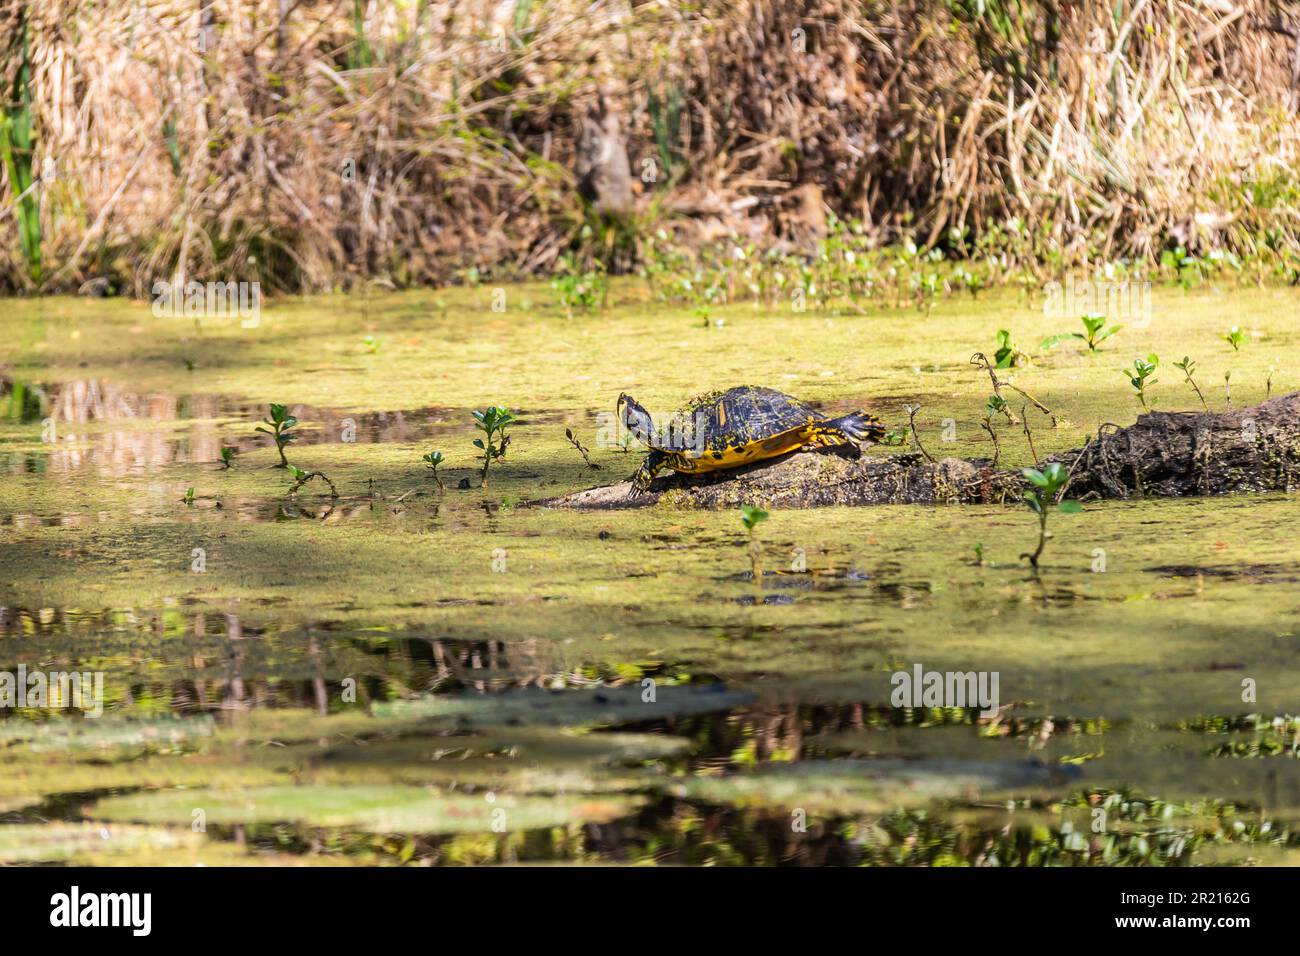 Una tortuga corredera del vientre amarillo tomando sol en un tronco en un pantano de Carolina del Sur con plantas que salen del agua a la luz del día. Foto de stock